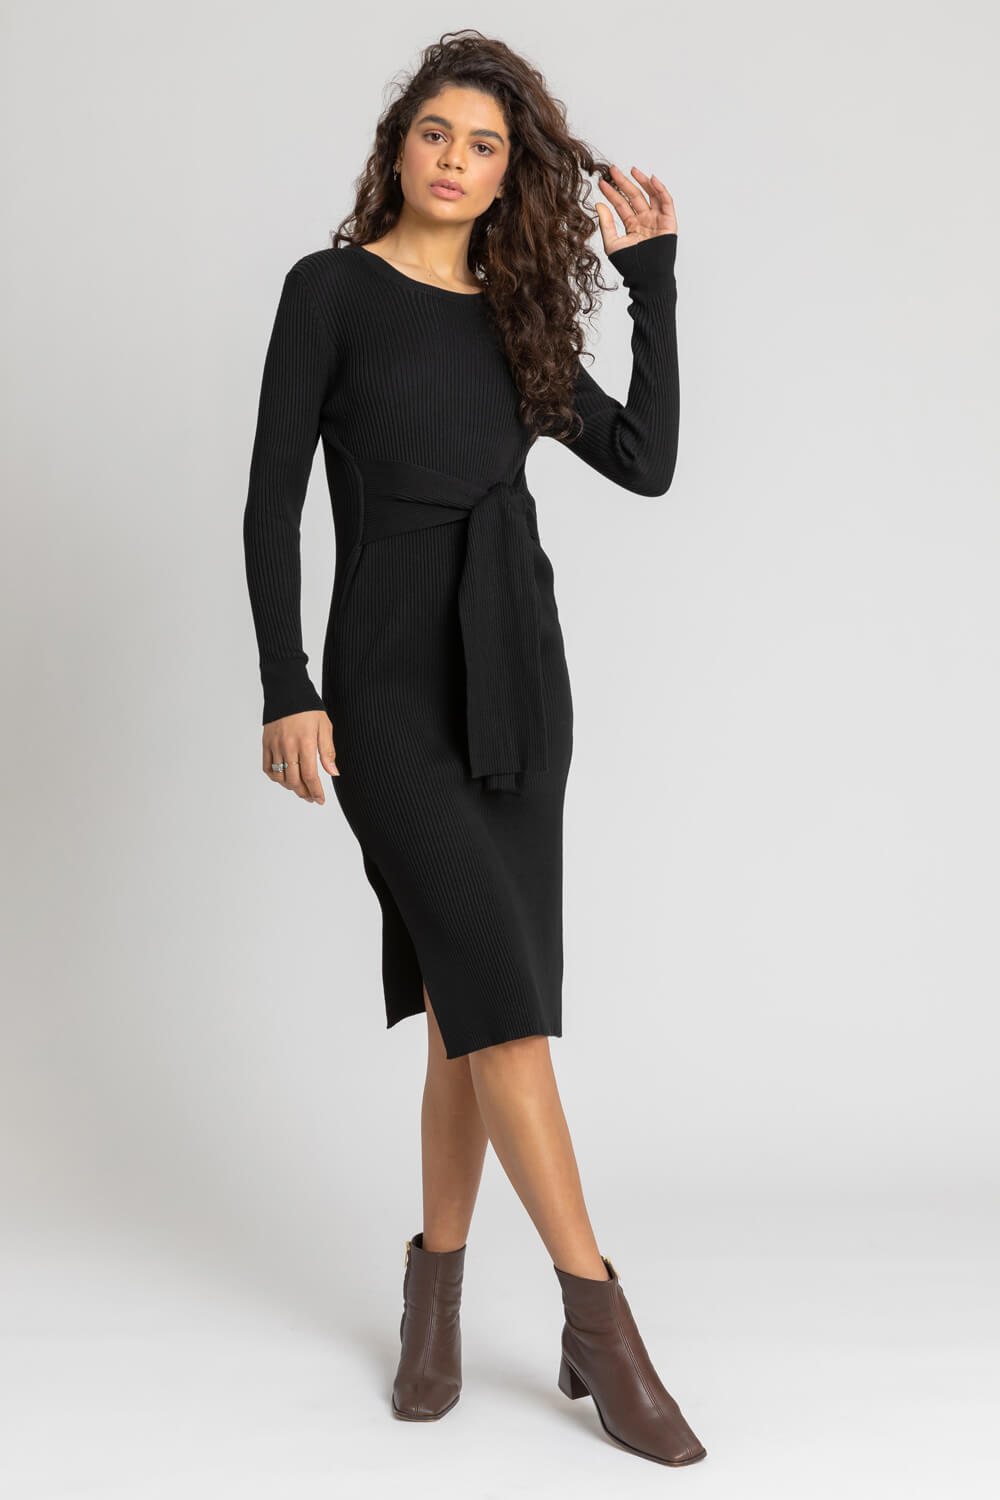 Black Side Split Belted Knit Dress, Image 5 of 5